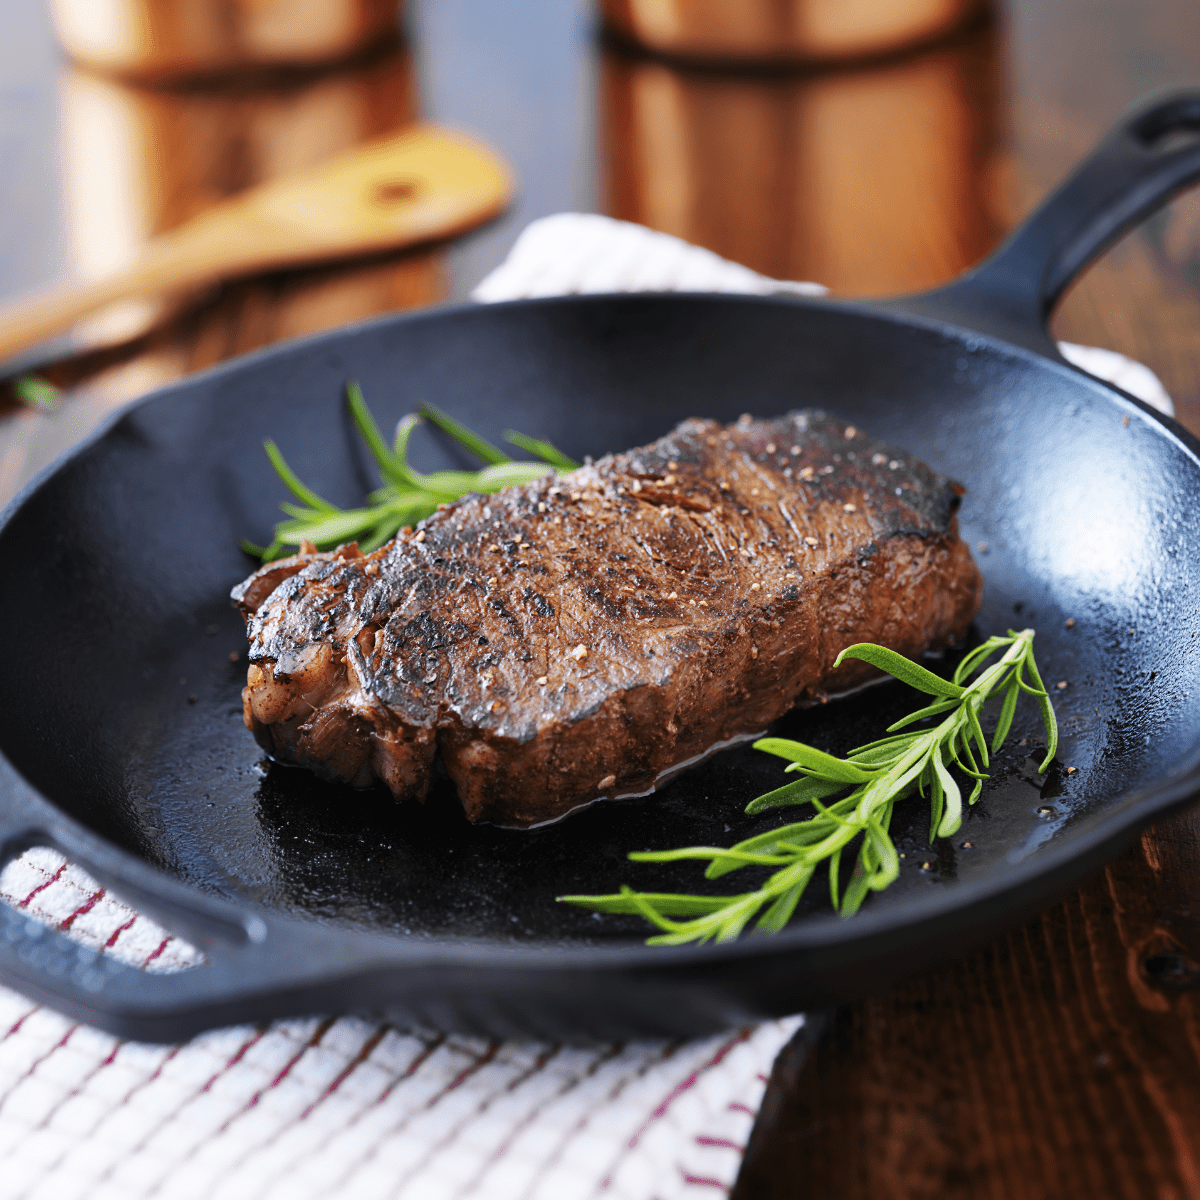 A steak seared in a pan.